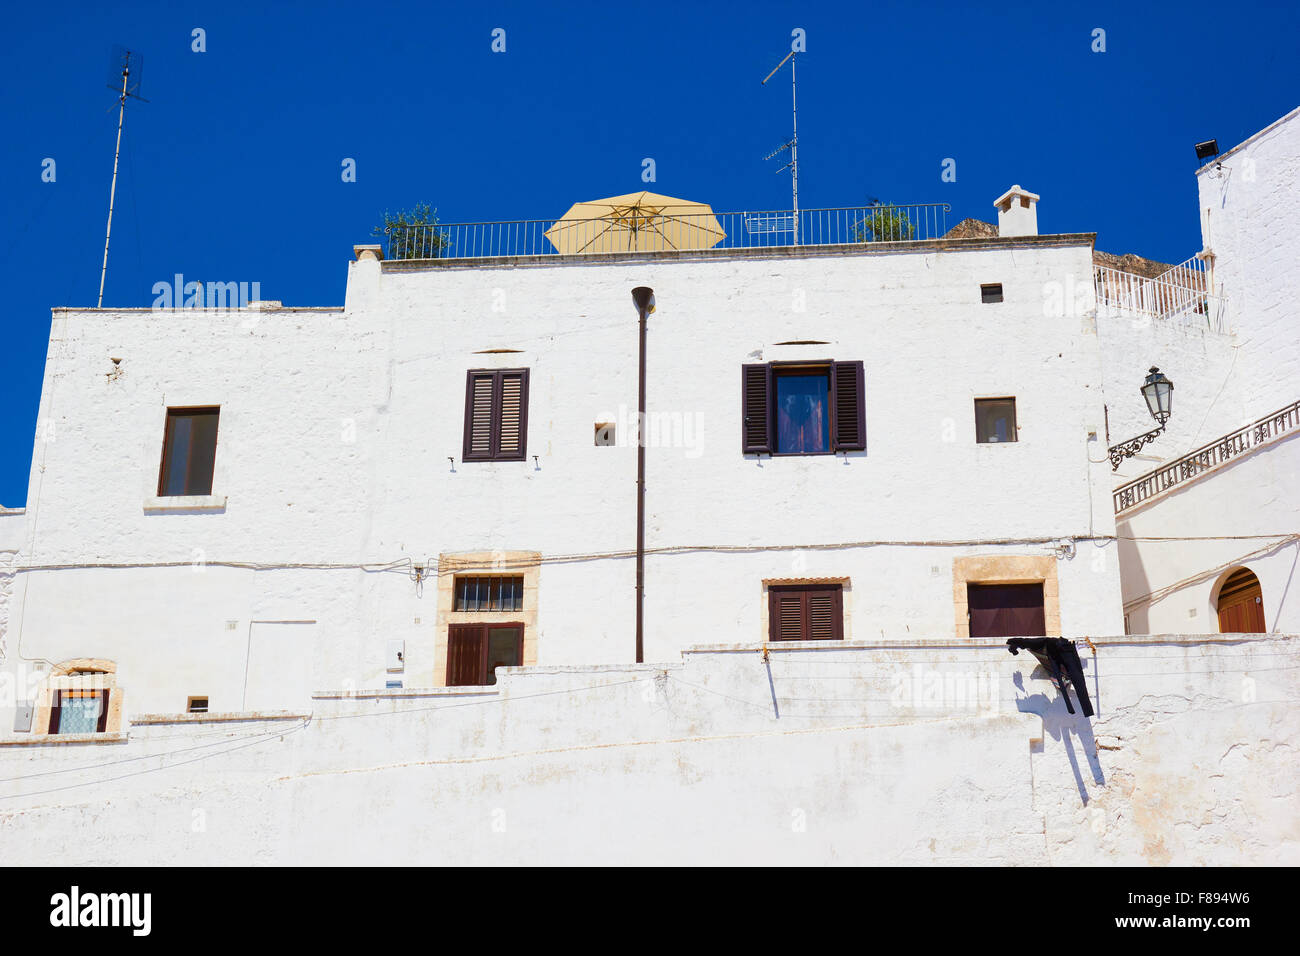 Terraza en el techo por encima de la ciudad blanca de Ostuni, conocida como La città Bianca Puglia Apulia provincia de Brindisi Italia Europa Foto de stock